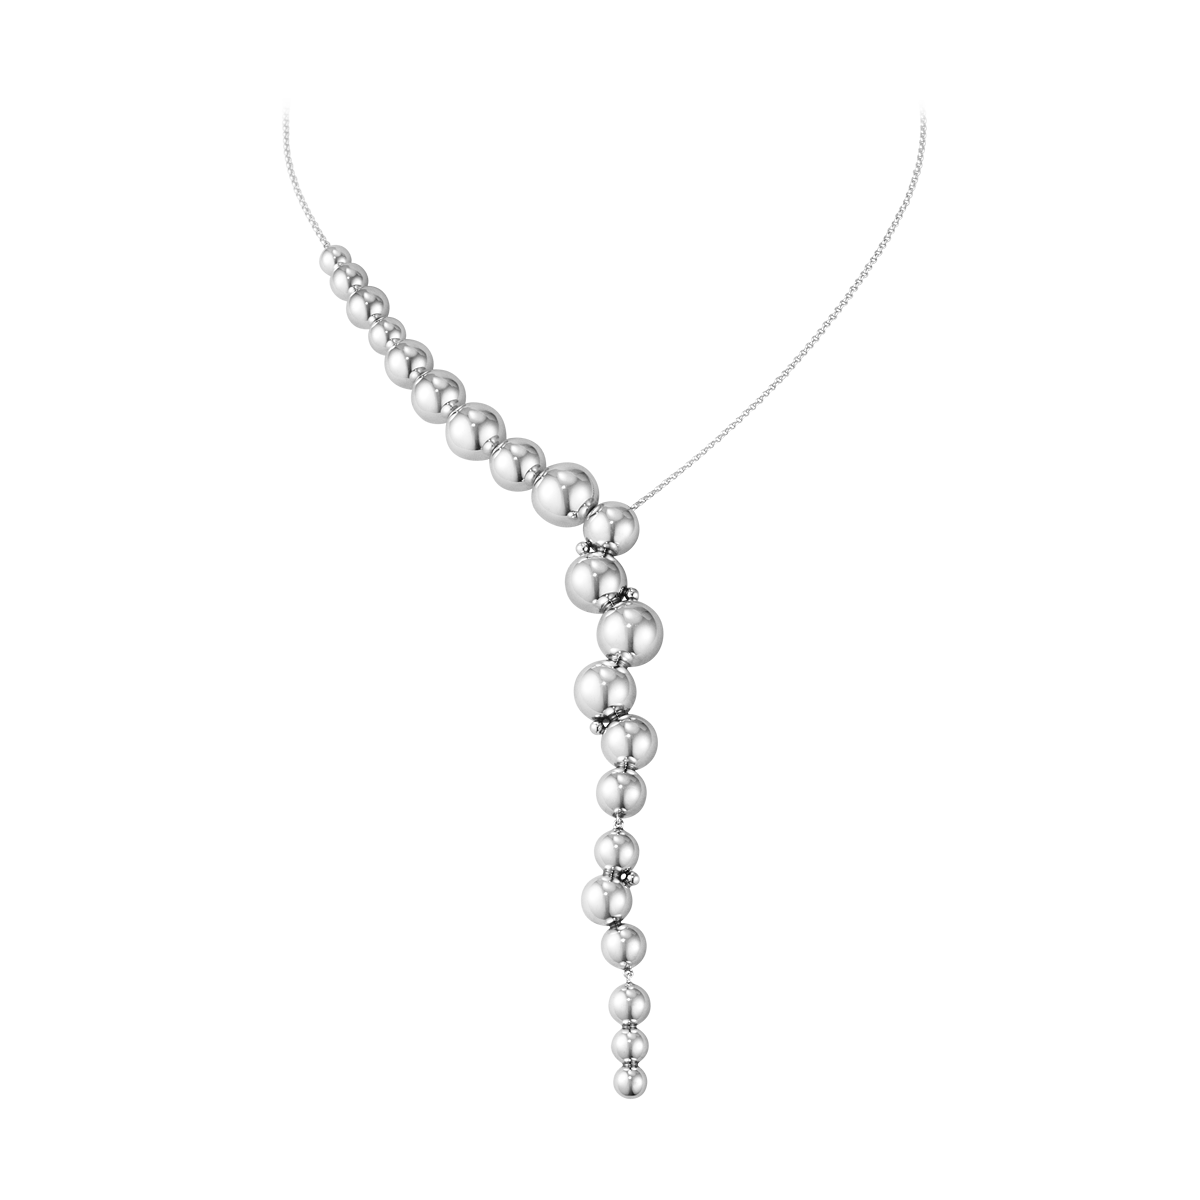 Moonlight Grapes halskæde - oxideret sølv fra Georg Jensen